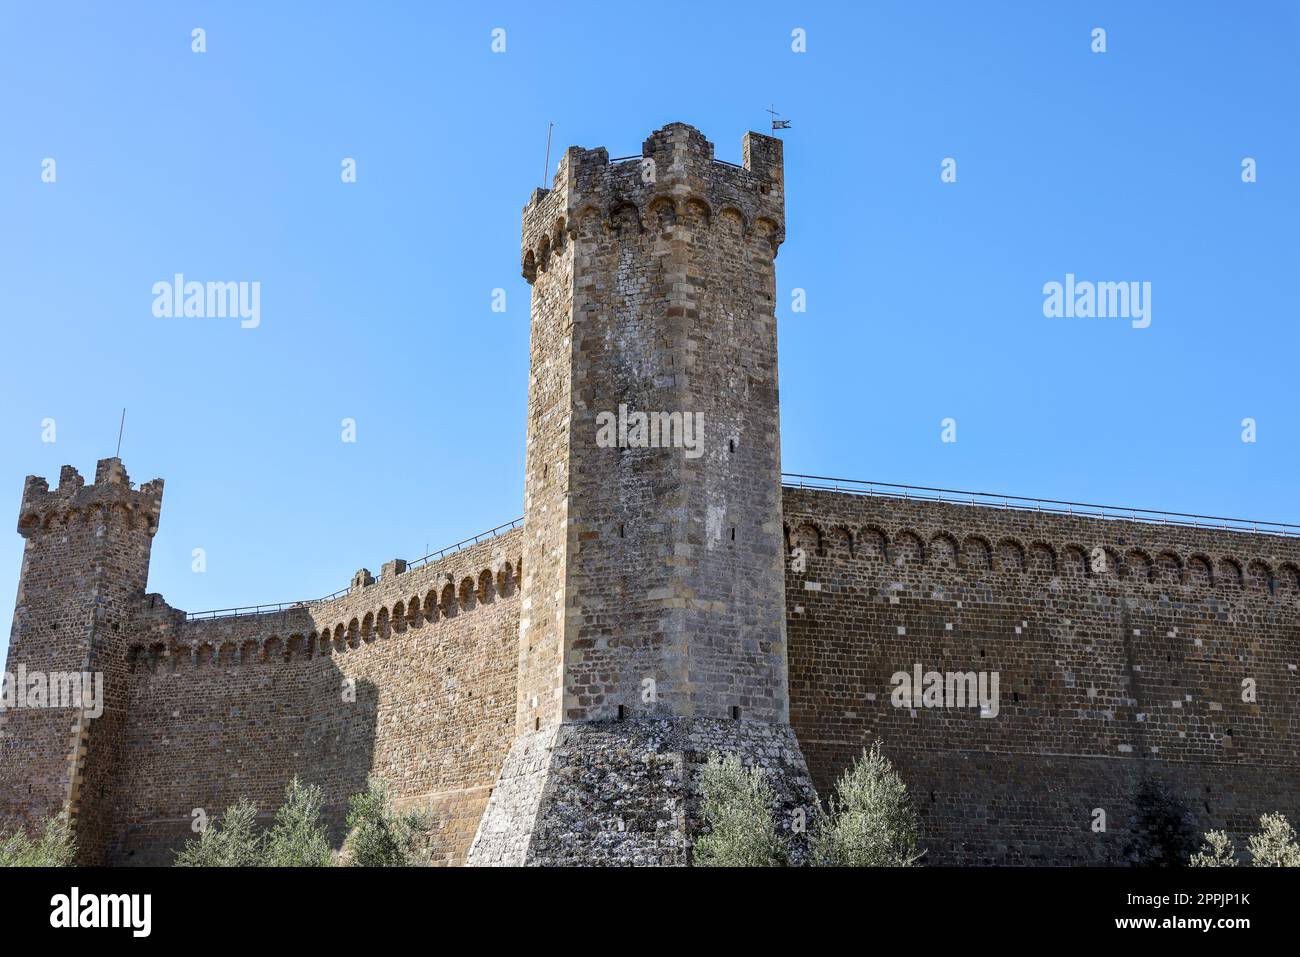 Fortezza del XIV secolo ampliata nel 1571 da Cosimo i de'Medici. Montalcino, Italia Foto Stock